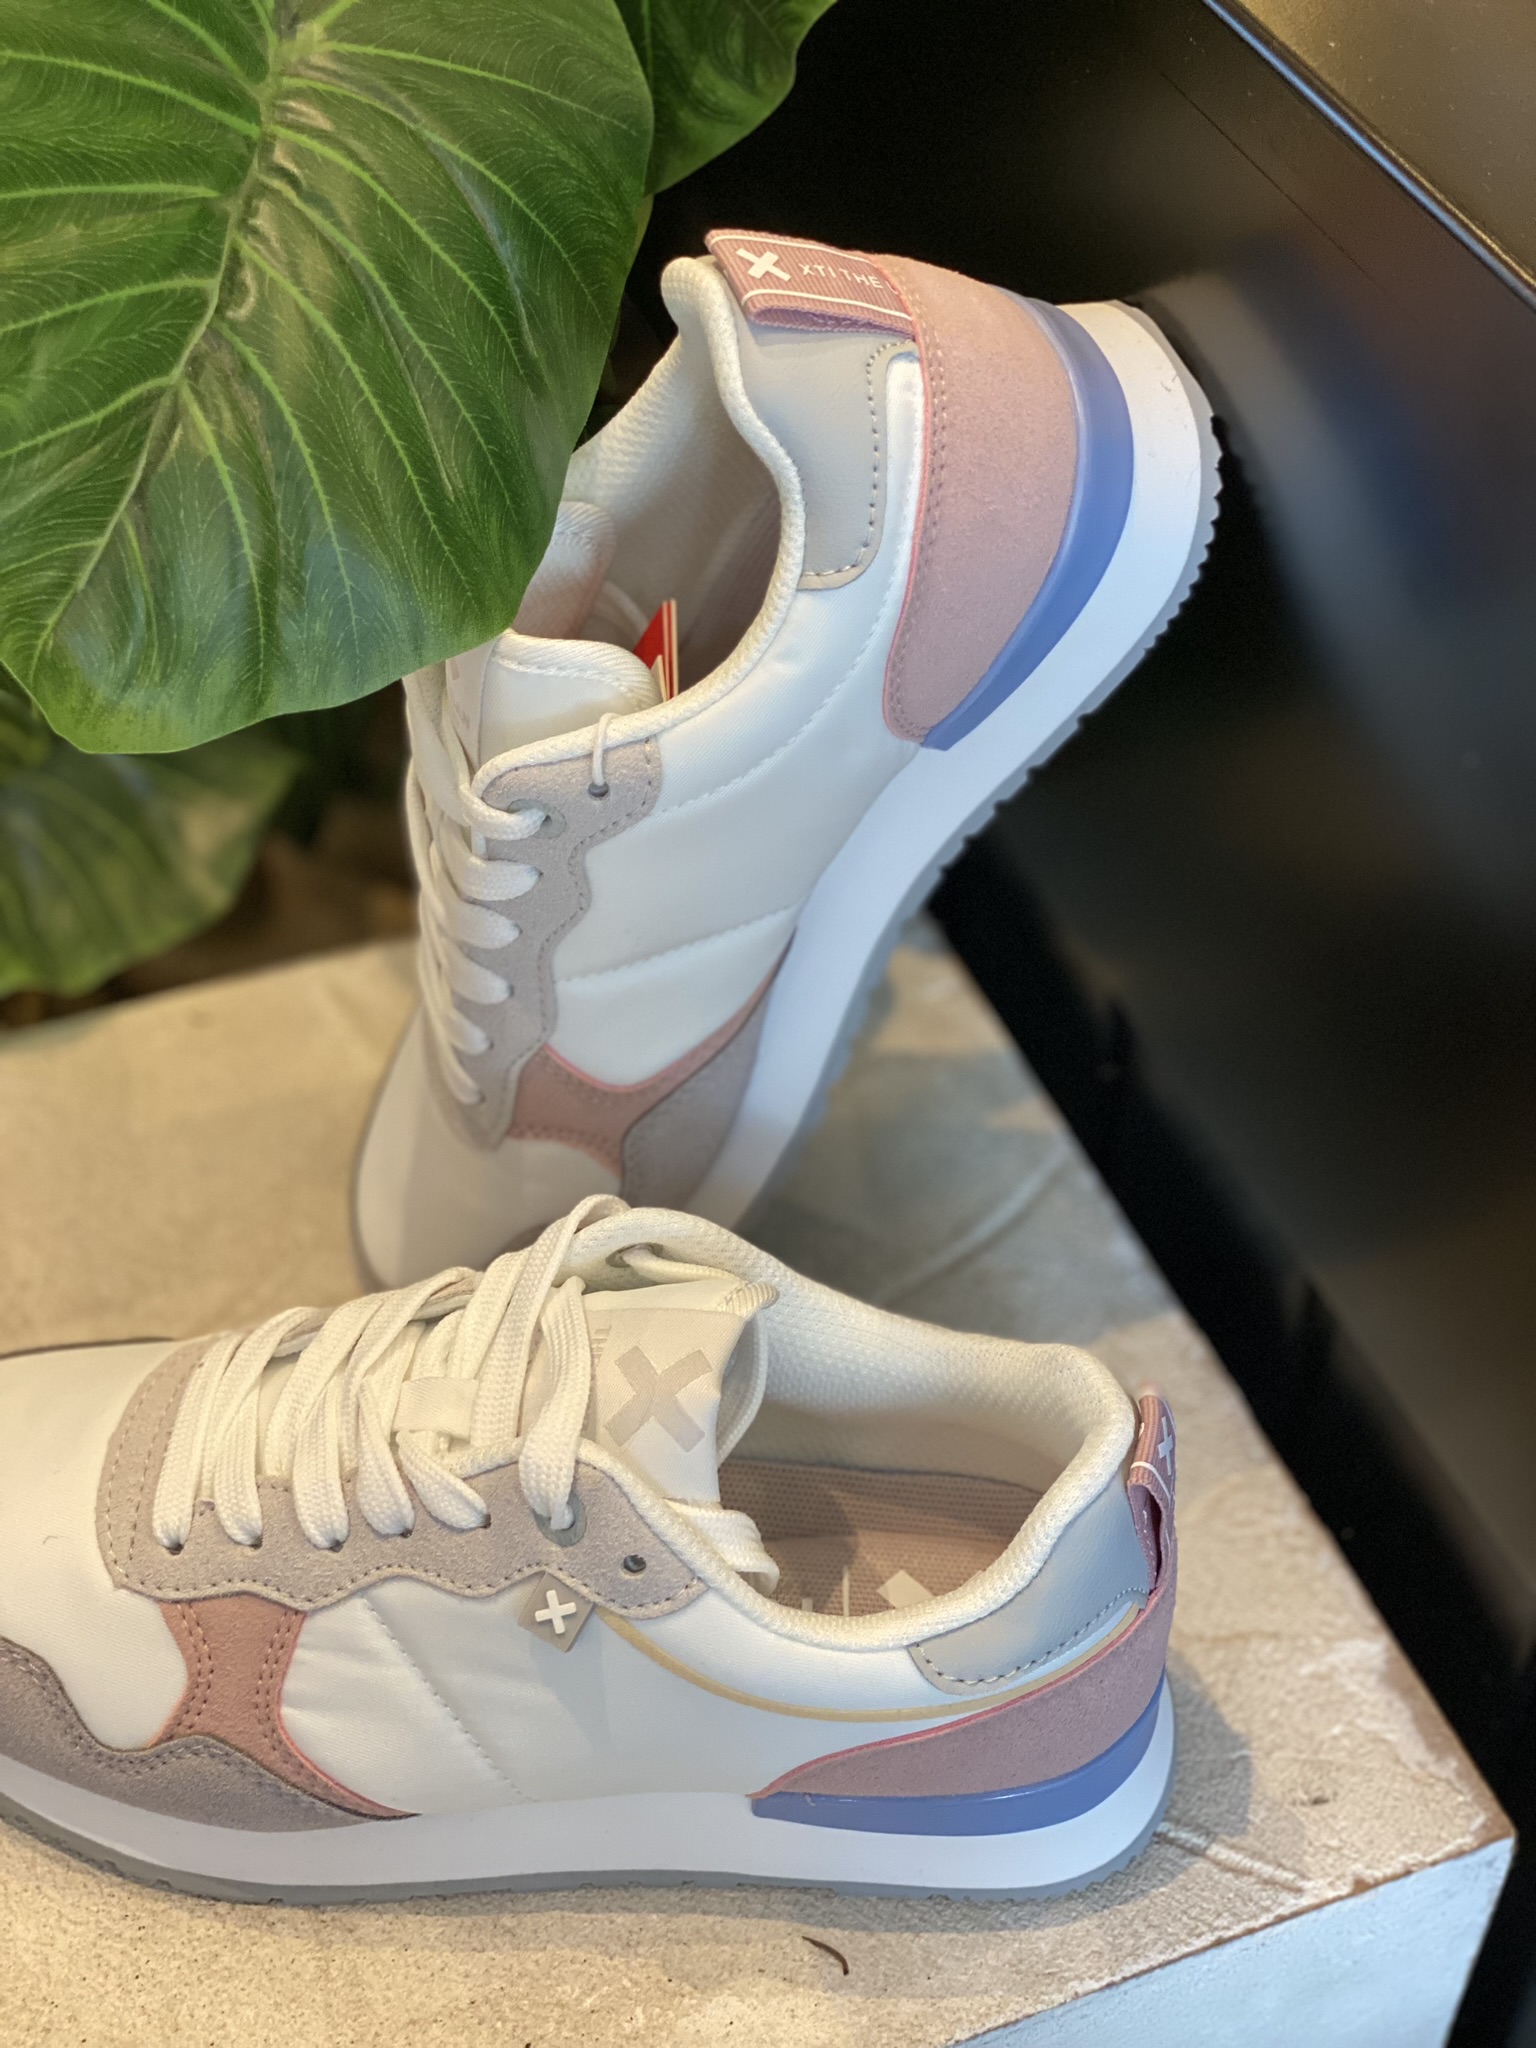 Sneaker modelo 142247 Combinado en Nylon color blanco, rosa y azul.